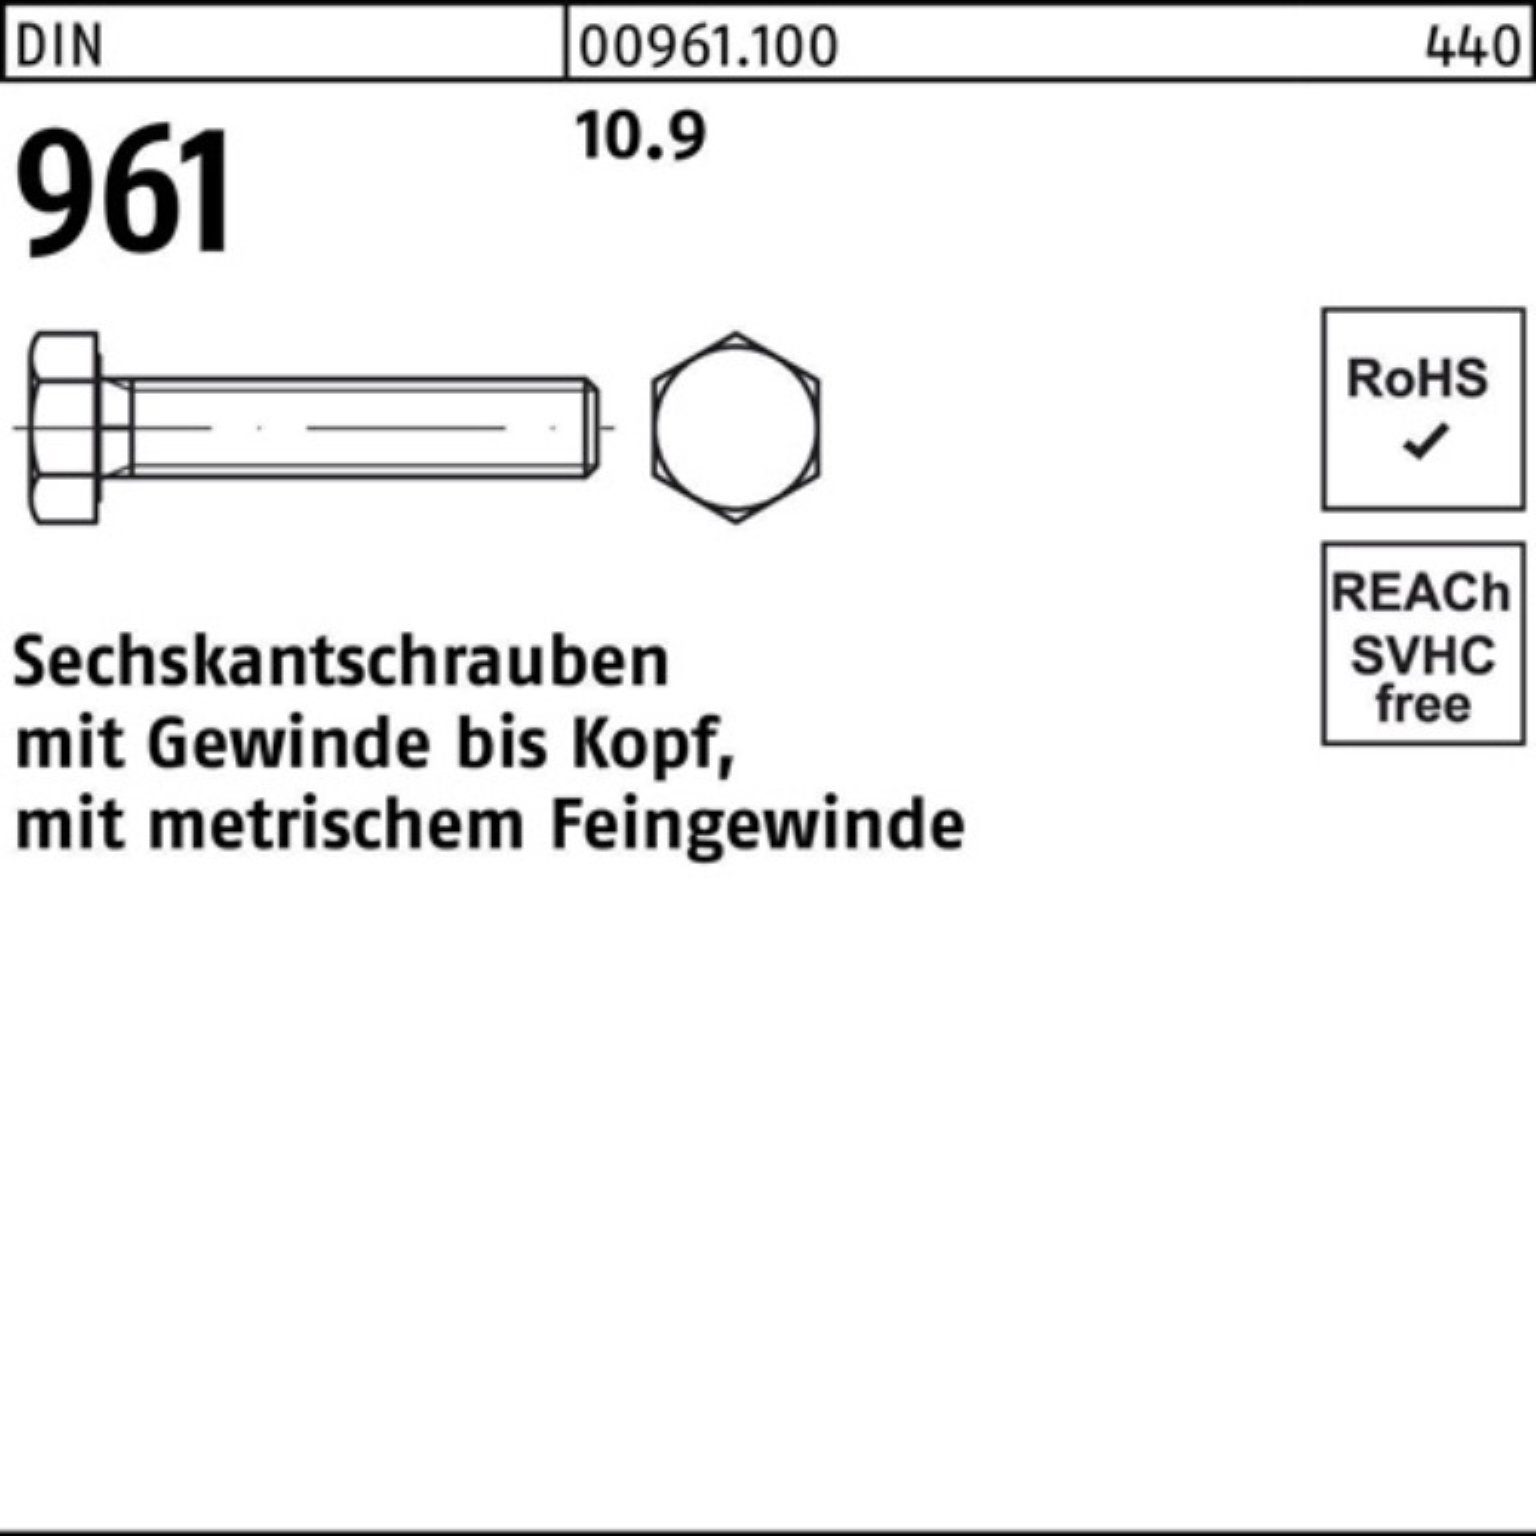 Reyher Sechskantschraube 100er DIN Stück M24x1,5x Pack 25 VG 60 Sechskantschraube DIN 961 10.9